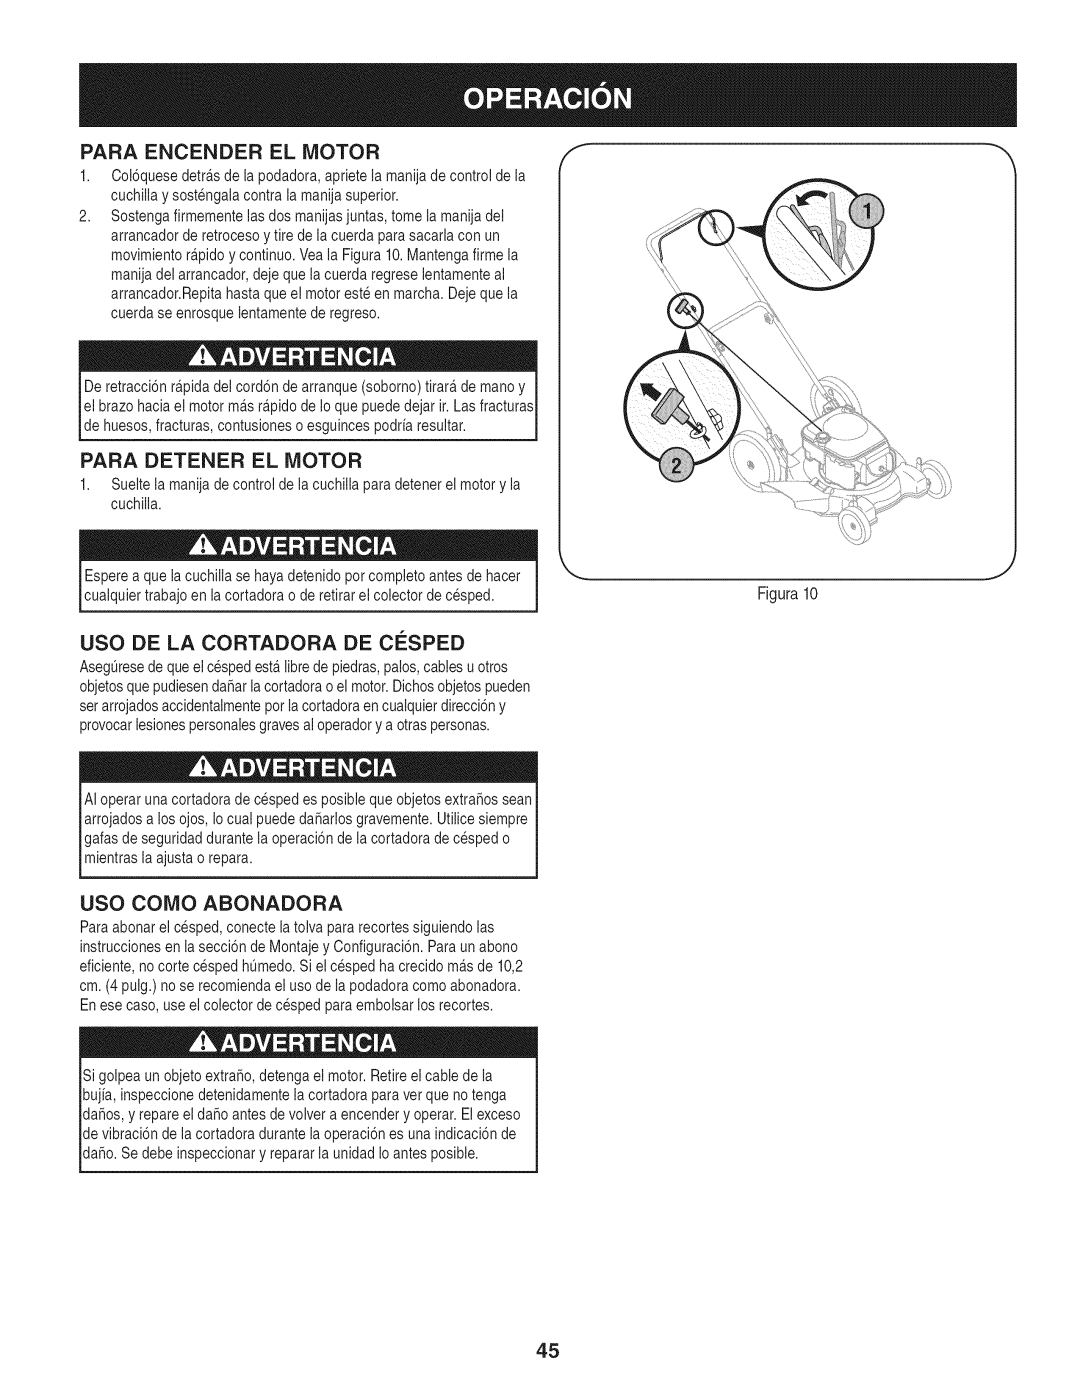 Craftsman 247.38528 manual Para Encender El Motor, Para Detener El Motor, Uso De La Cortadora De Cesped, Uso Como Abonadora 